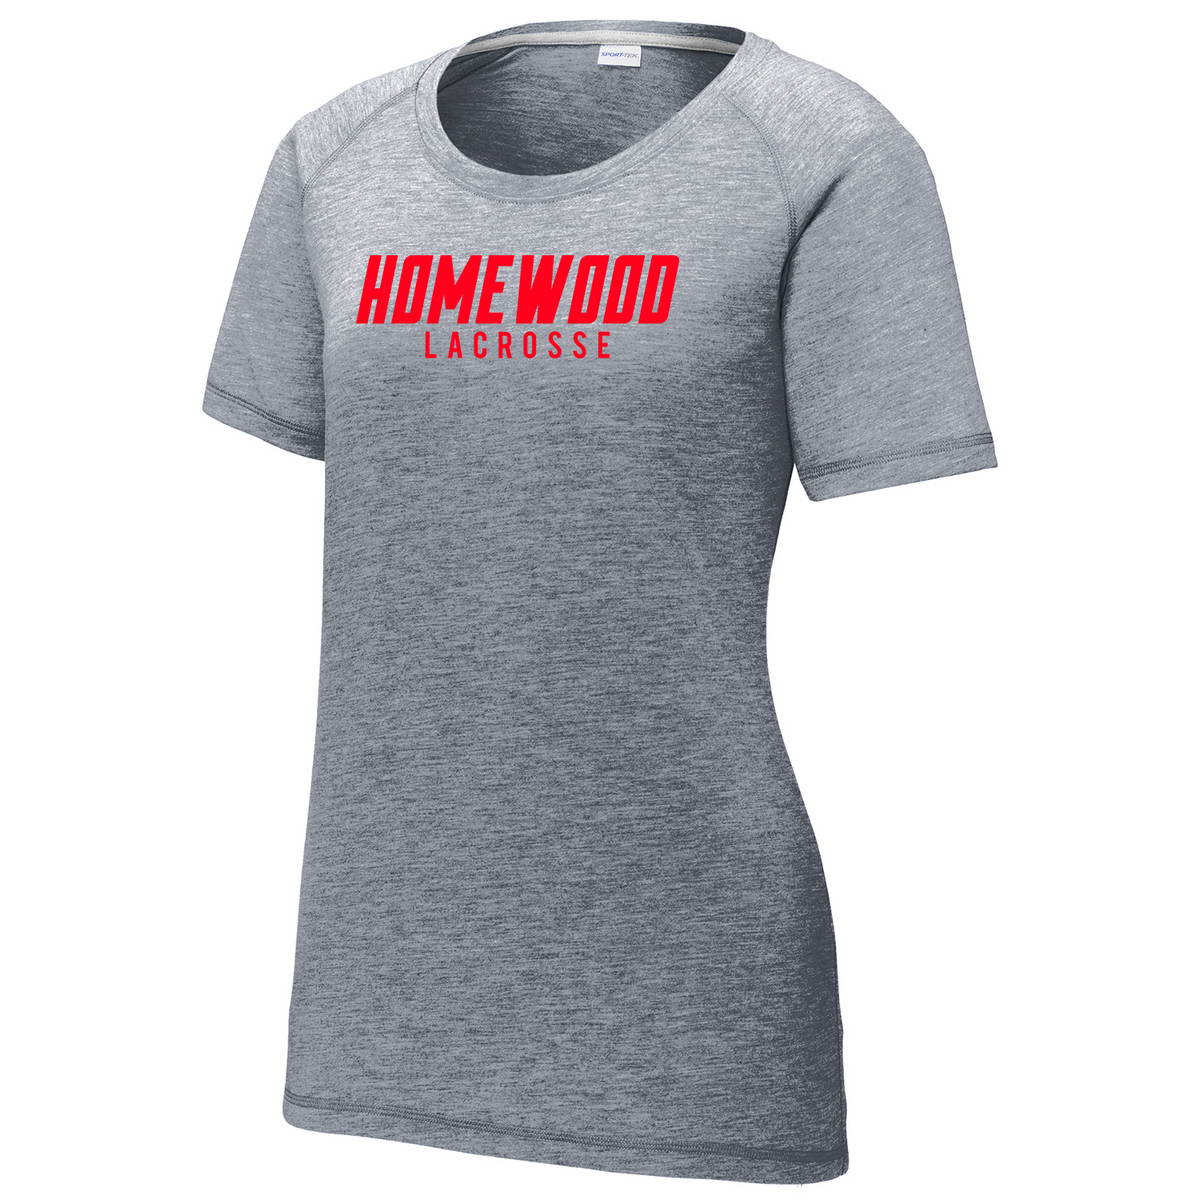 Homewood Lacrosse Women's Raglan CottonTouch